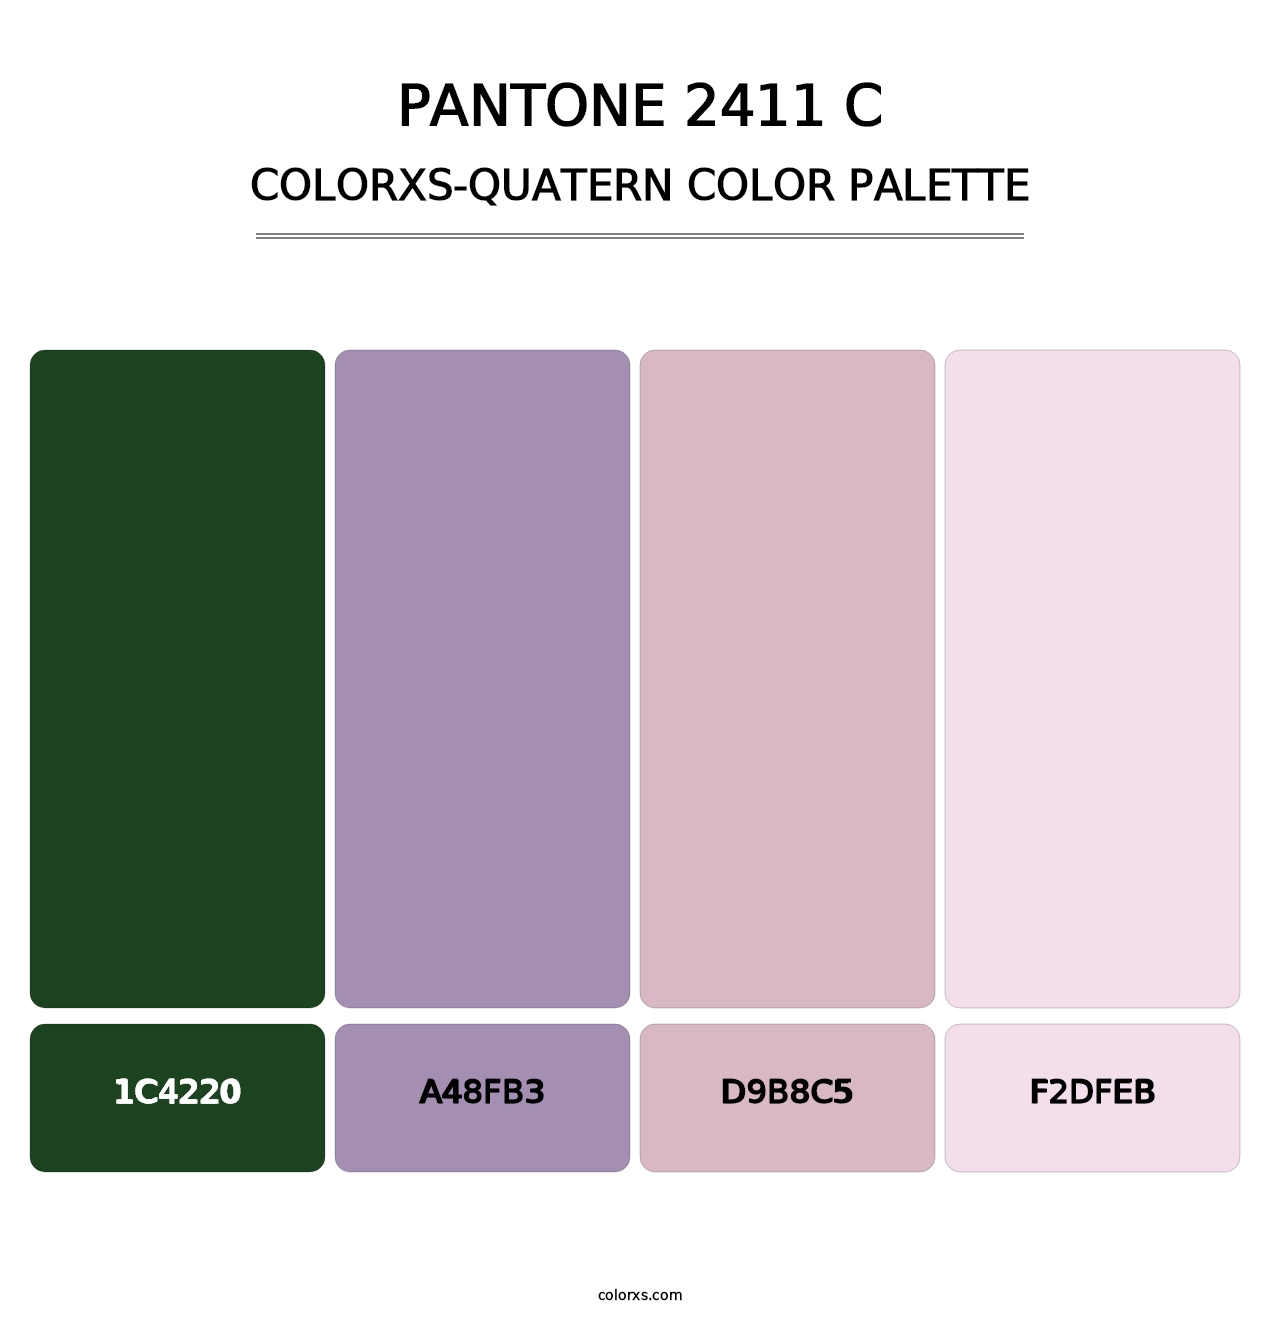 PANTONE 2411 C - Colorxs Quatern Palette